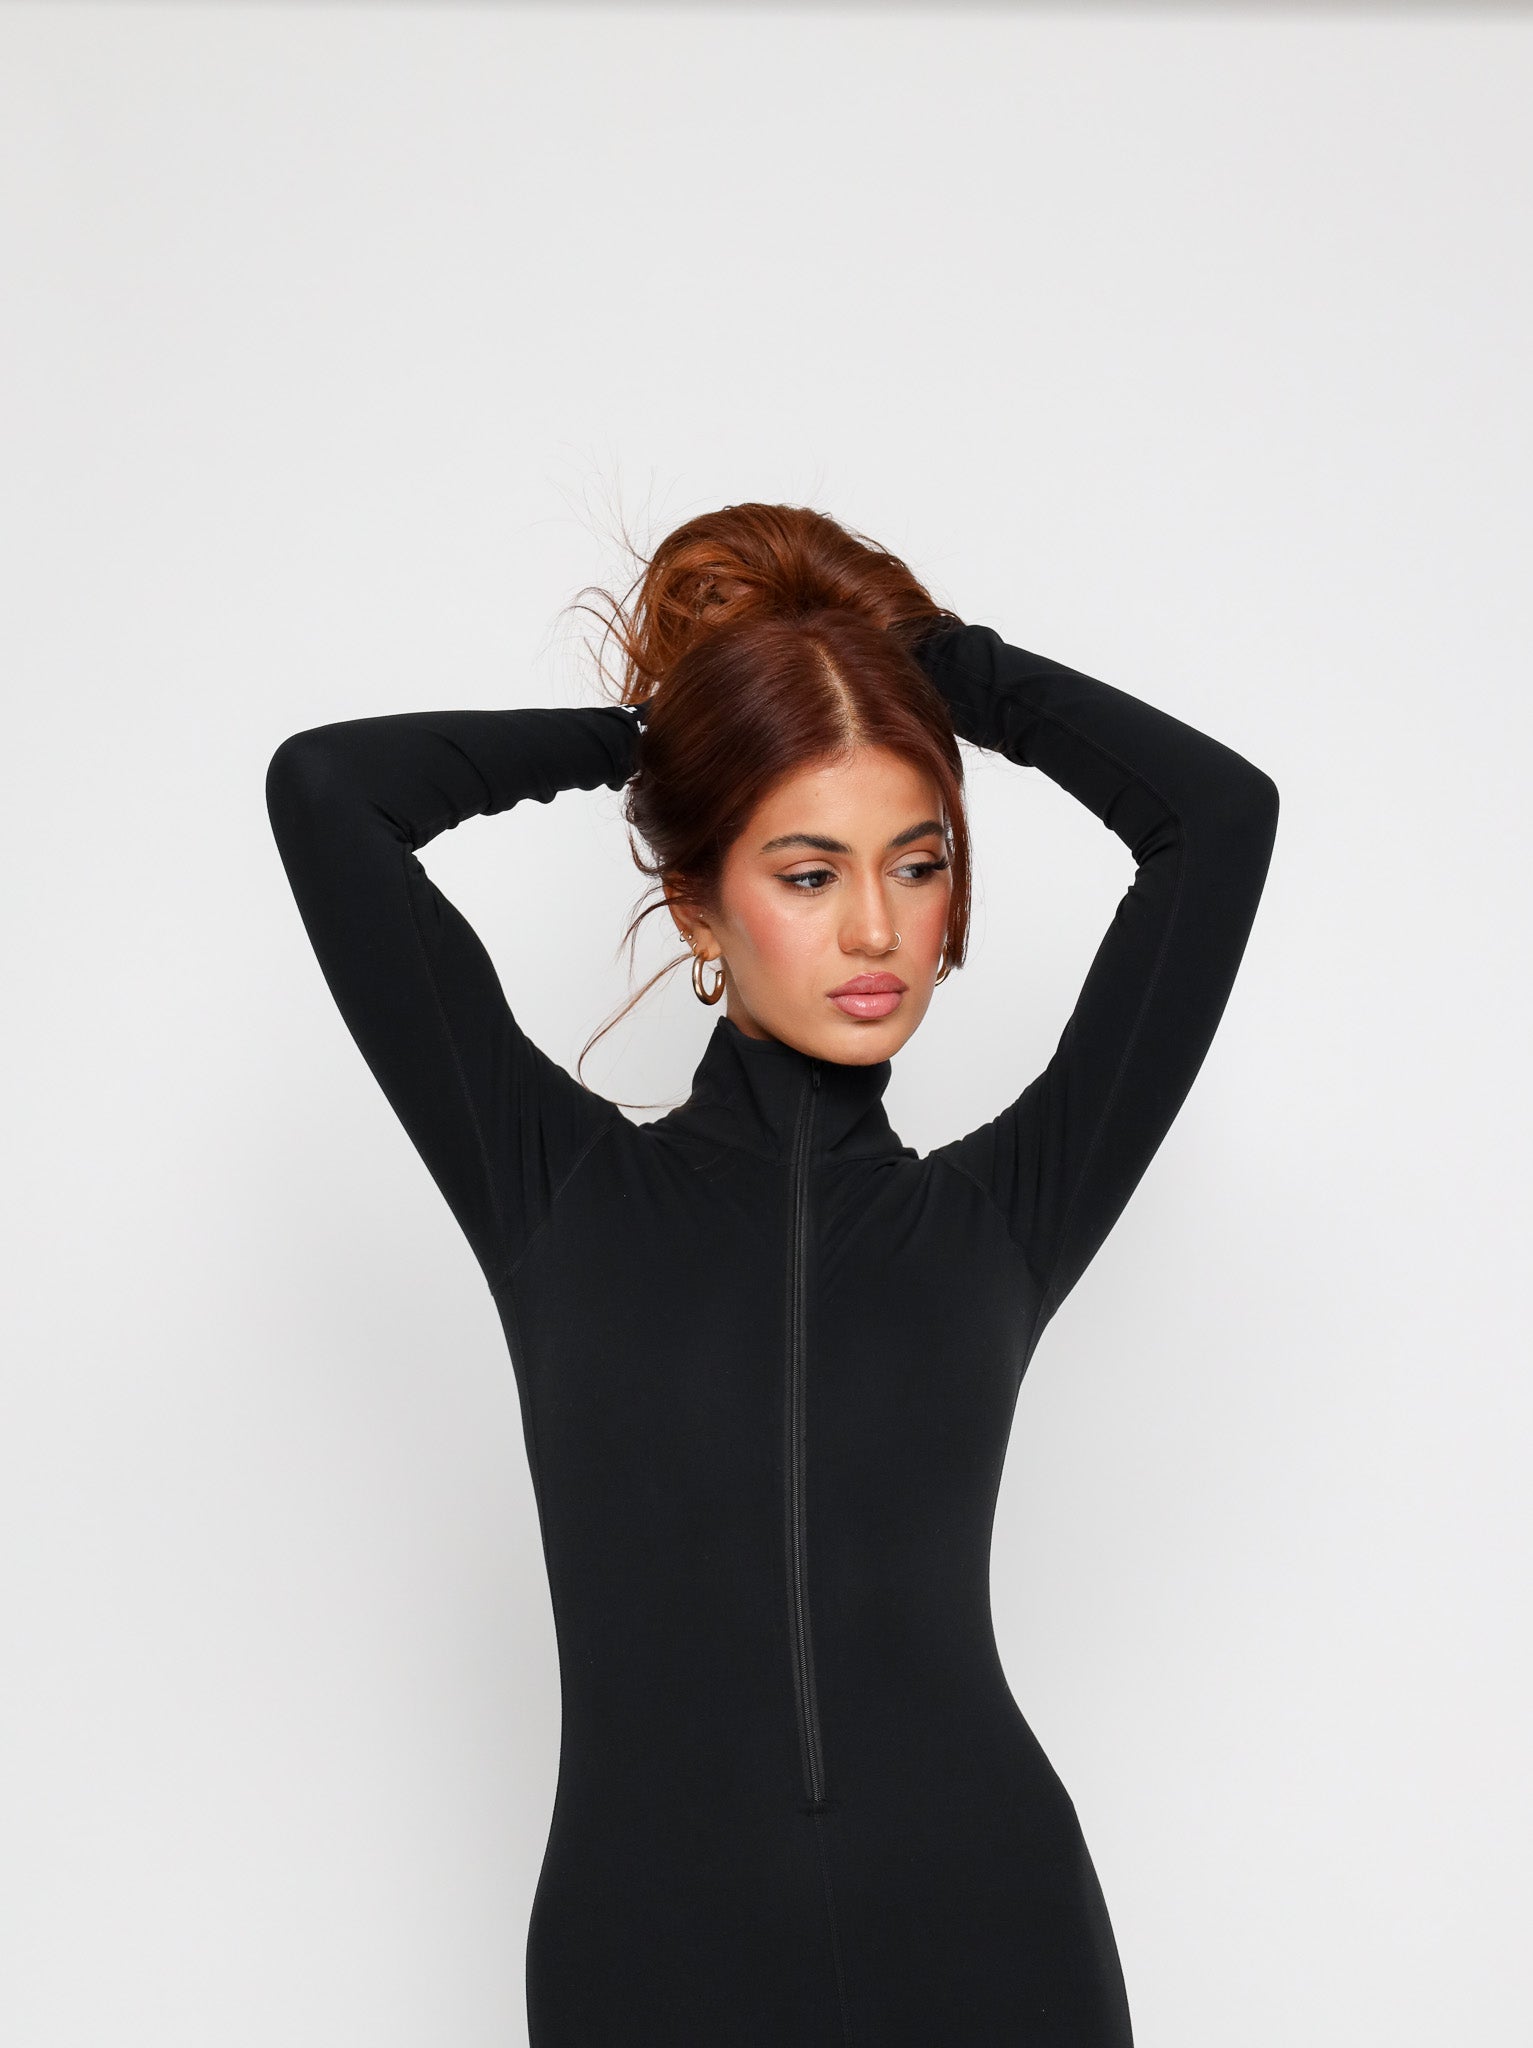 Turtleneck Bodysuit Black Long Sleeve -  Canada